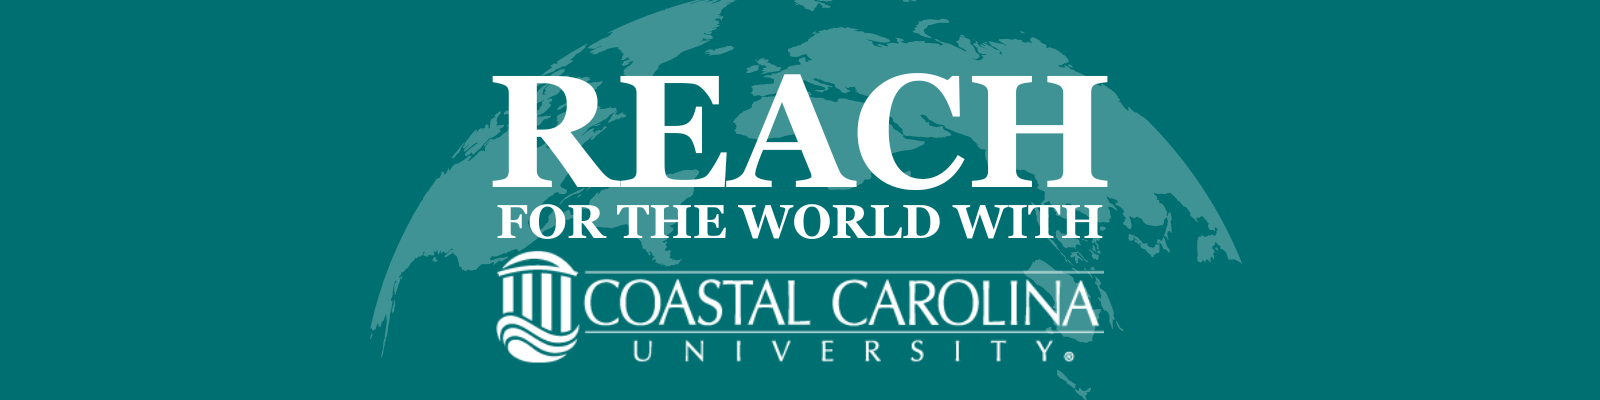 Reach for the World with Coastal Carolina University